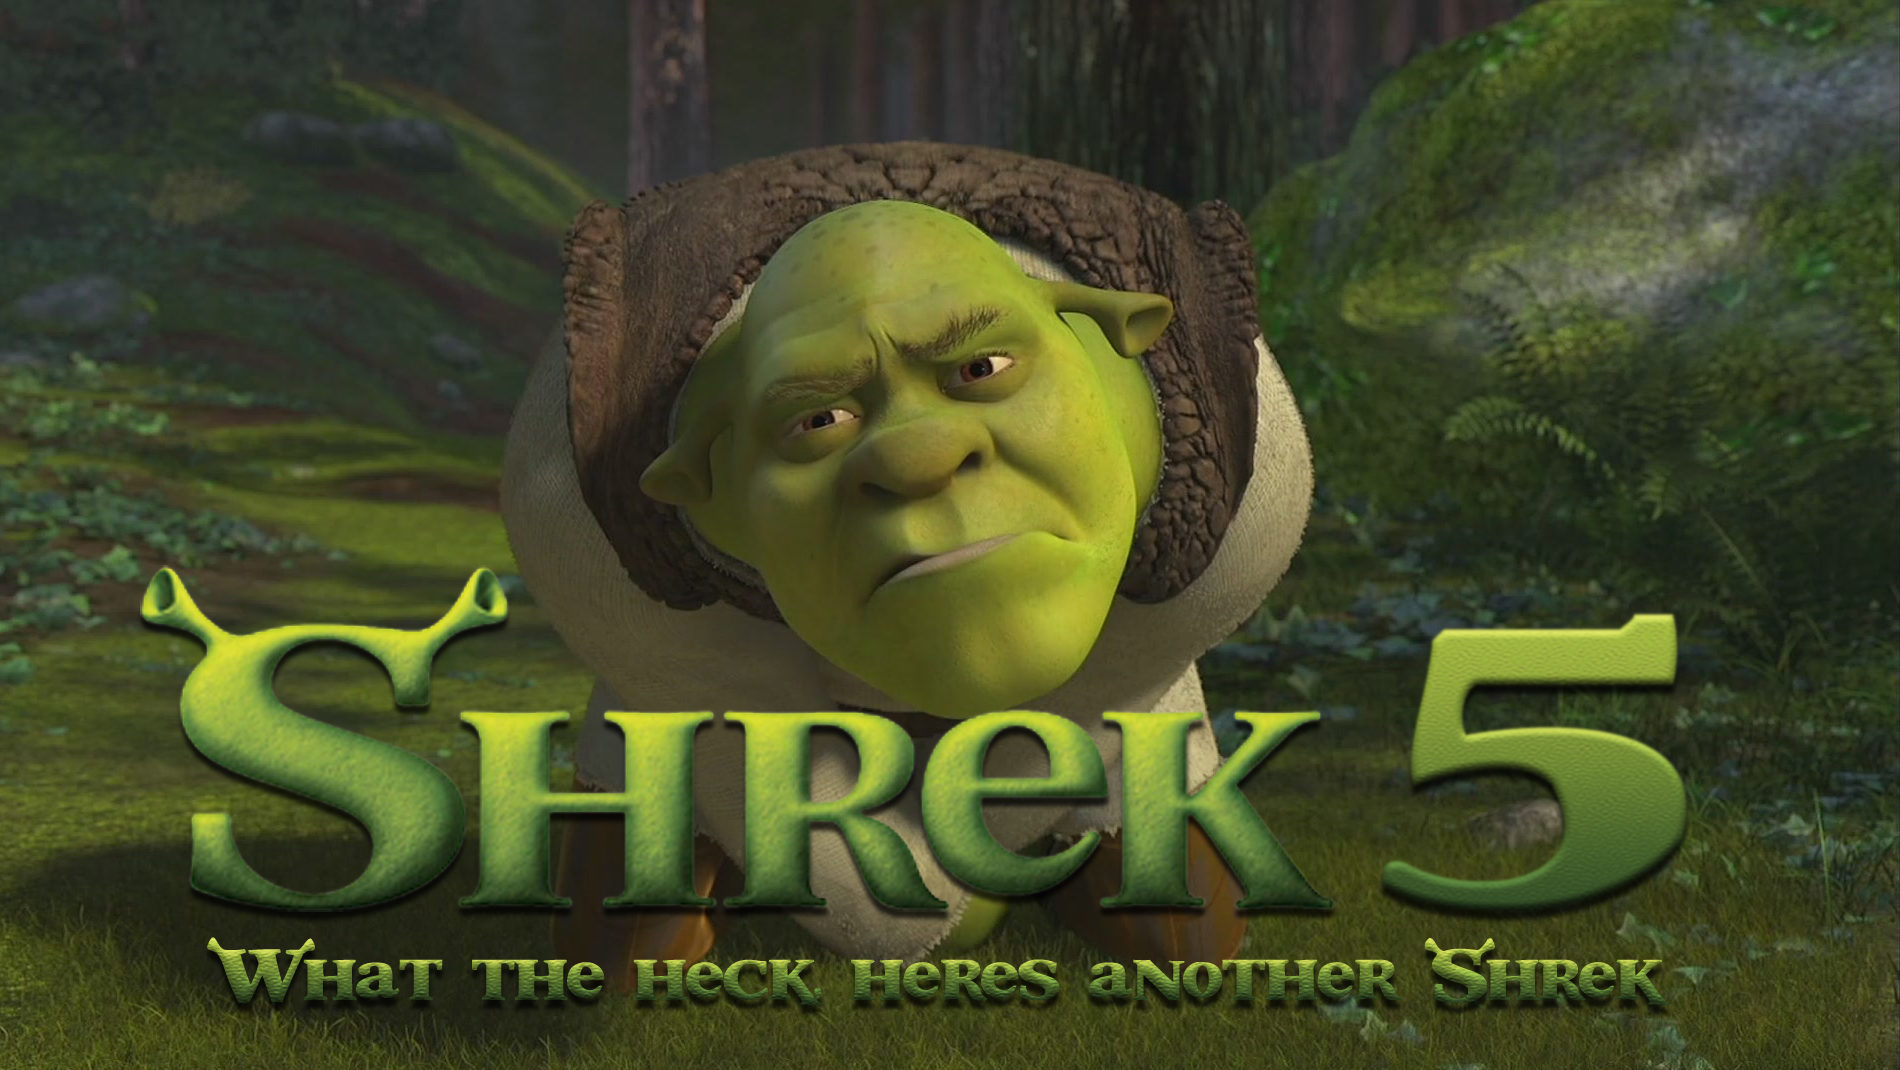 Shrek 5 Spoilers: Release confirmed, 2019 Premiere pushed